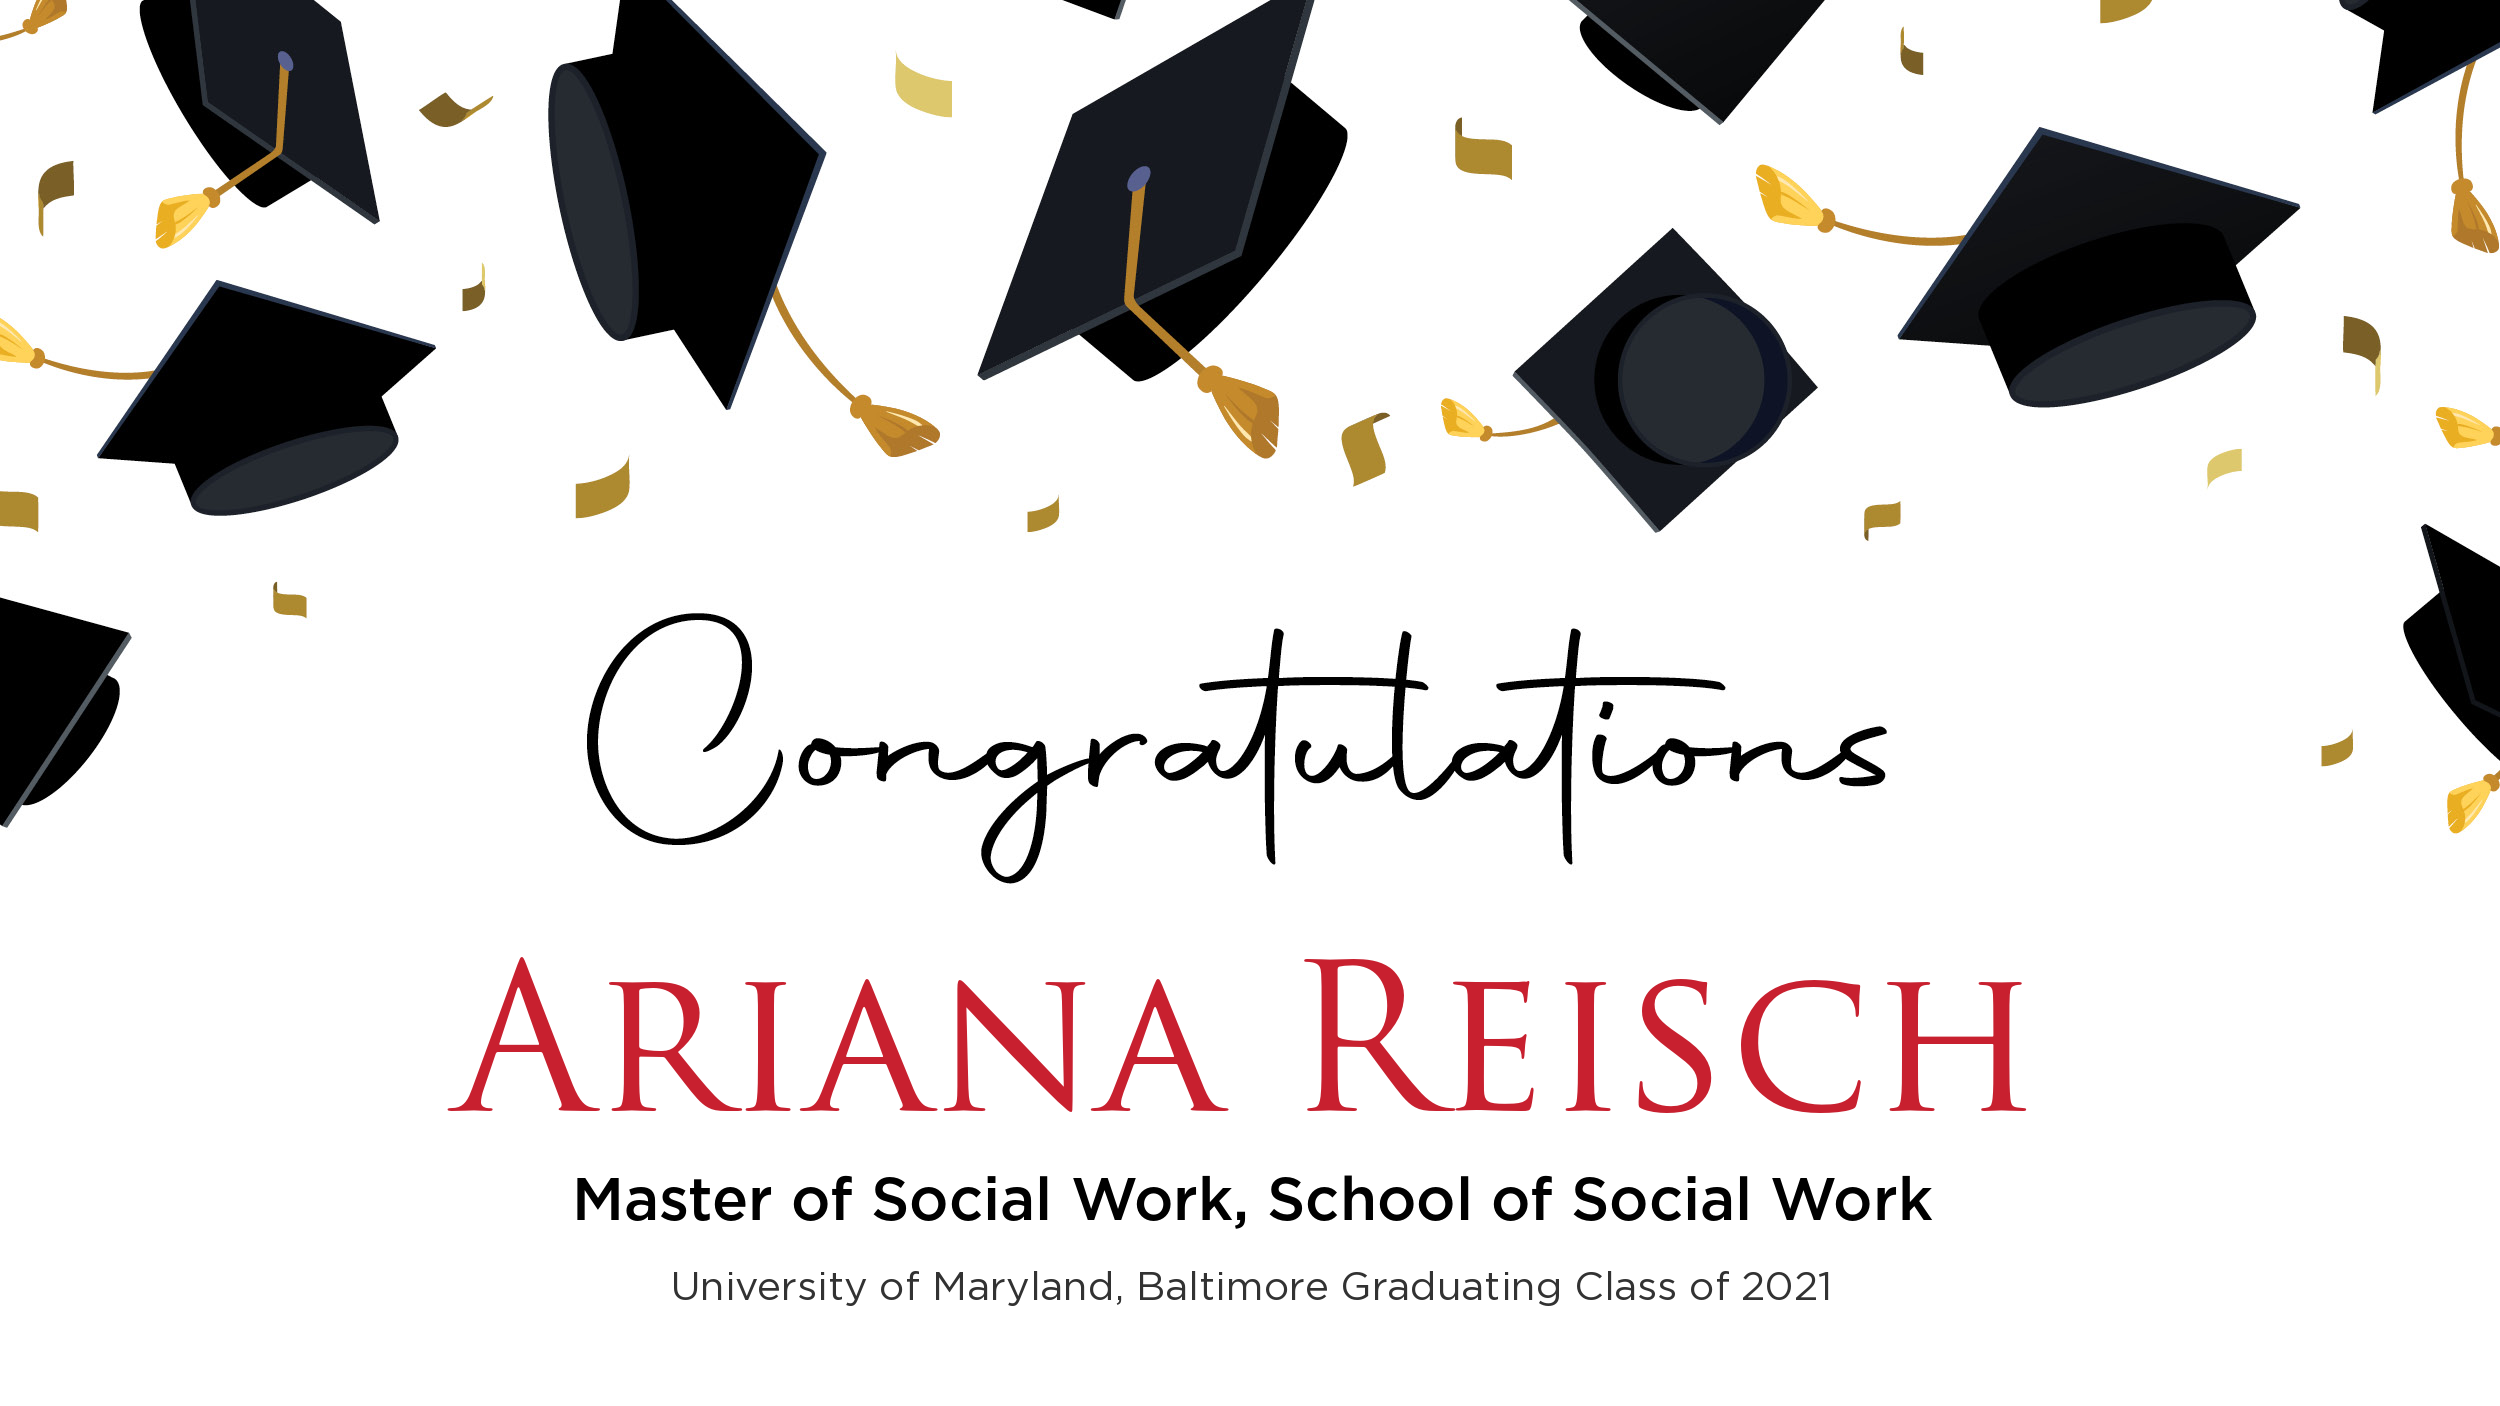 Congratulations Ariana Reisch, Master of Social Work